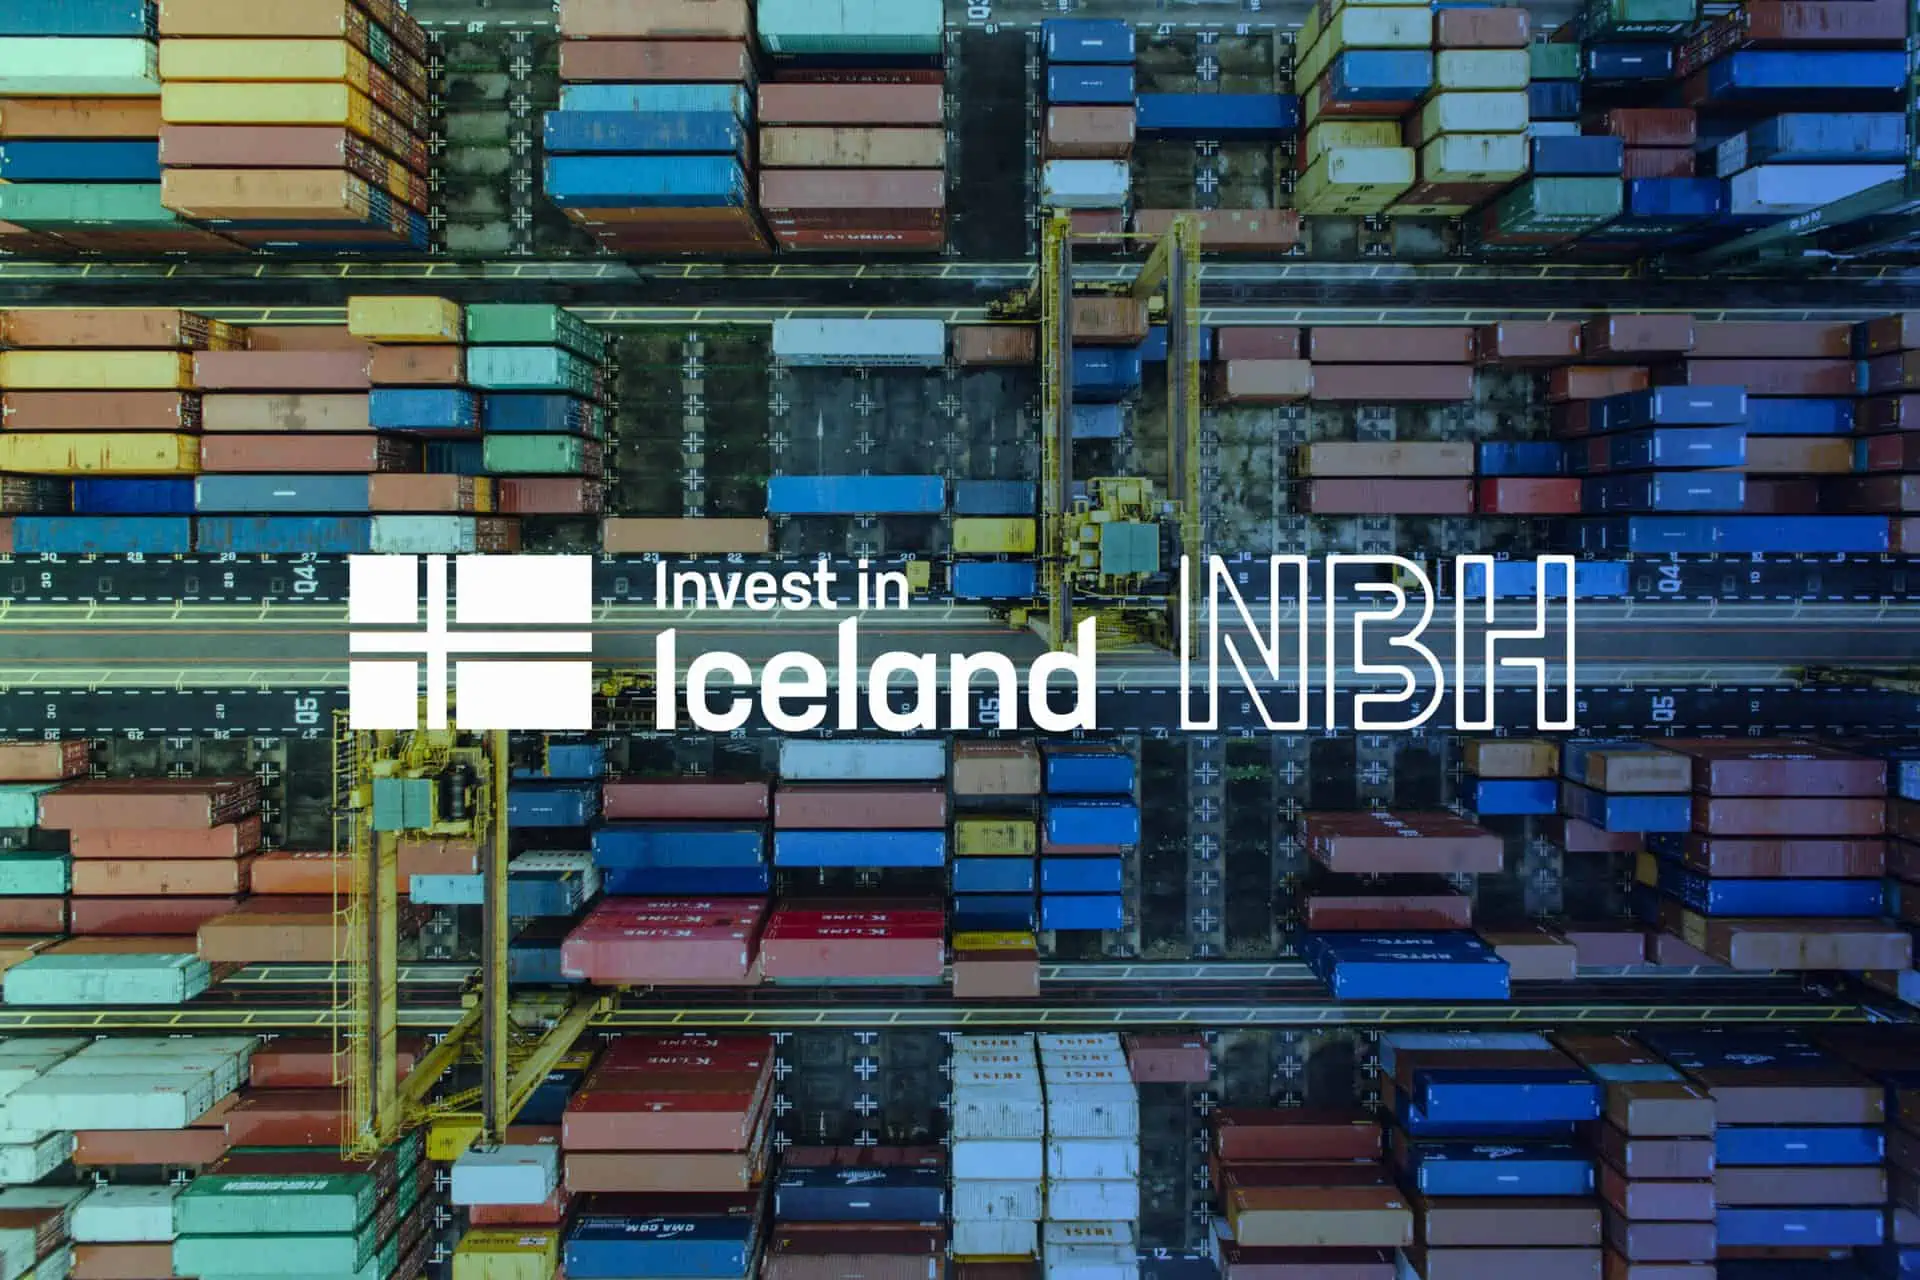 Promote Iceland utökar sitt partnerskap med NBH för Invest in Iceland